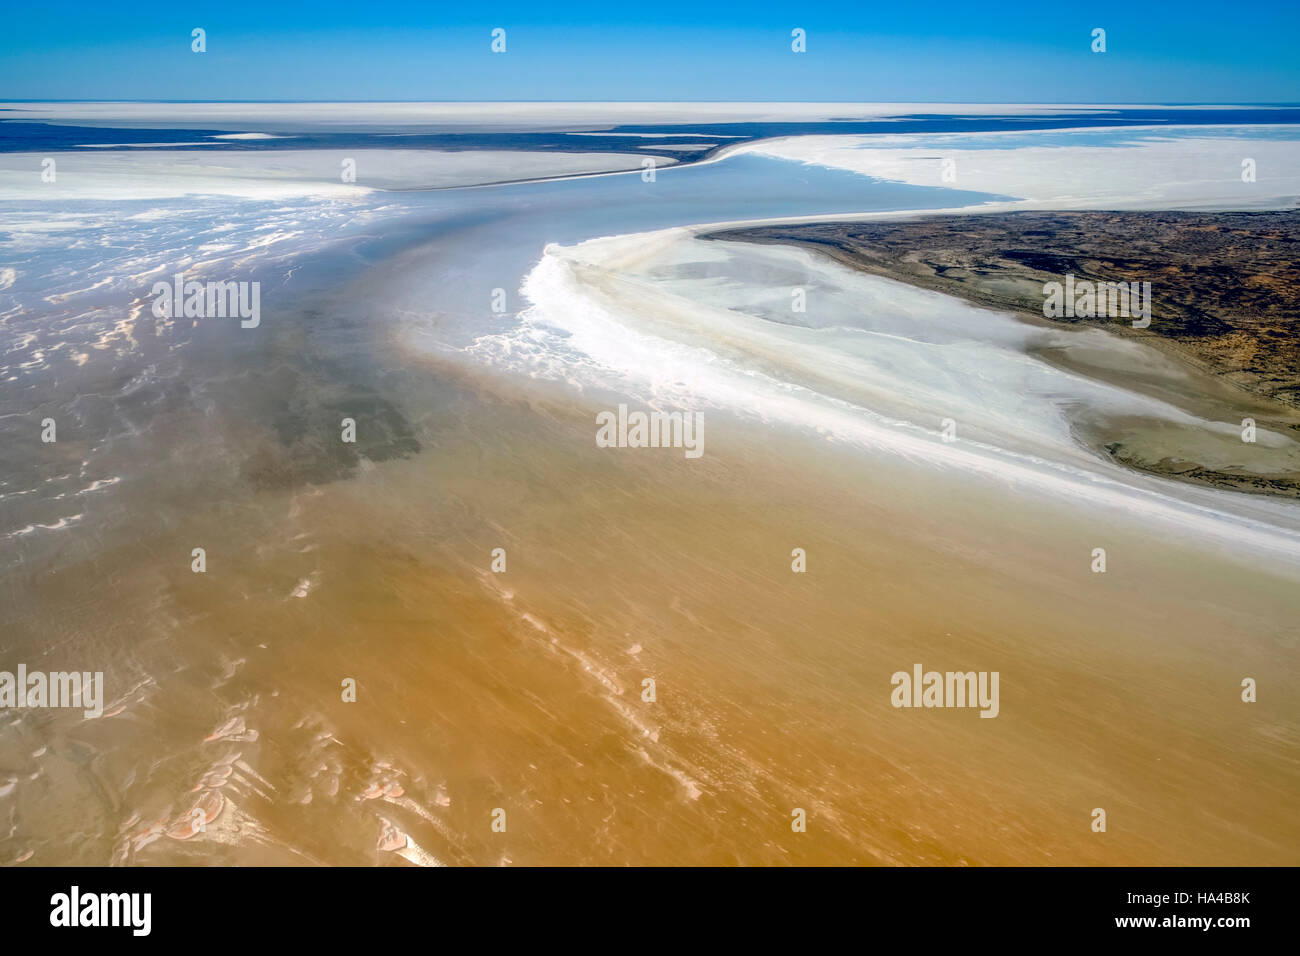 Une vue aérienne de la rare inondation de Kati Thanda - lac Eyre dans l'outback australien Banque D'Images